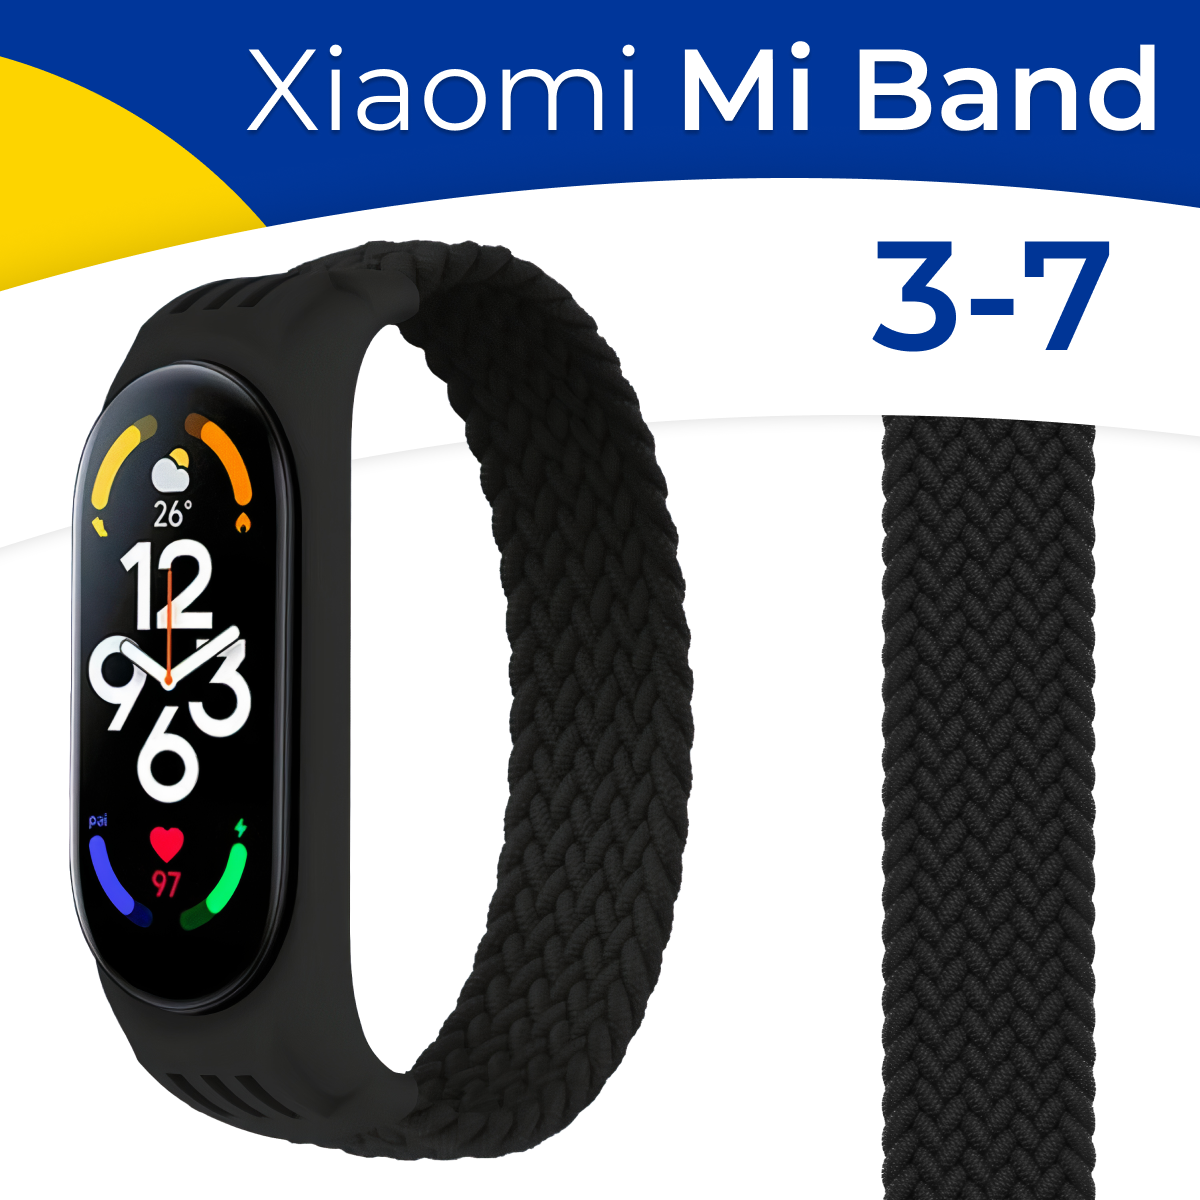 Нейлоновый ремешок для фитнес-трекера Xiaomi Mi Band 3 4 5 6 и 7 / Плетеный тканевый монобраслет (155 см) на смарт часы Сяоми Ми Бэнд 3-7 / Черный